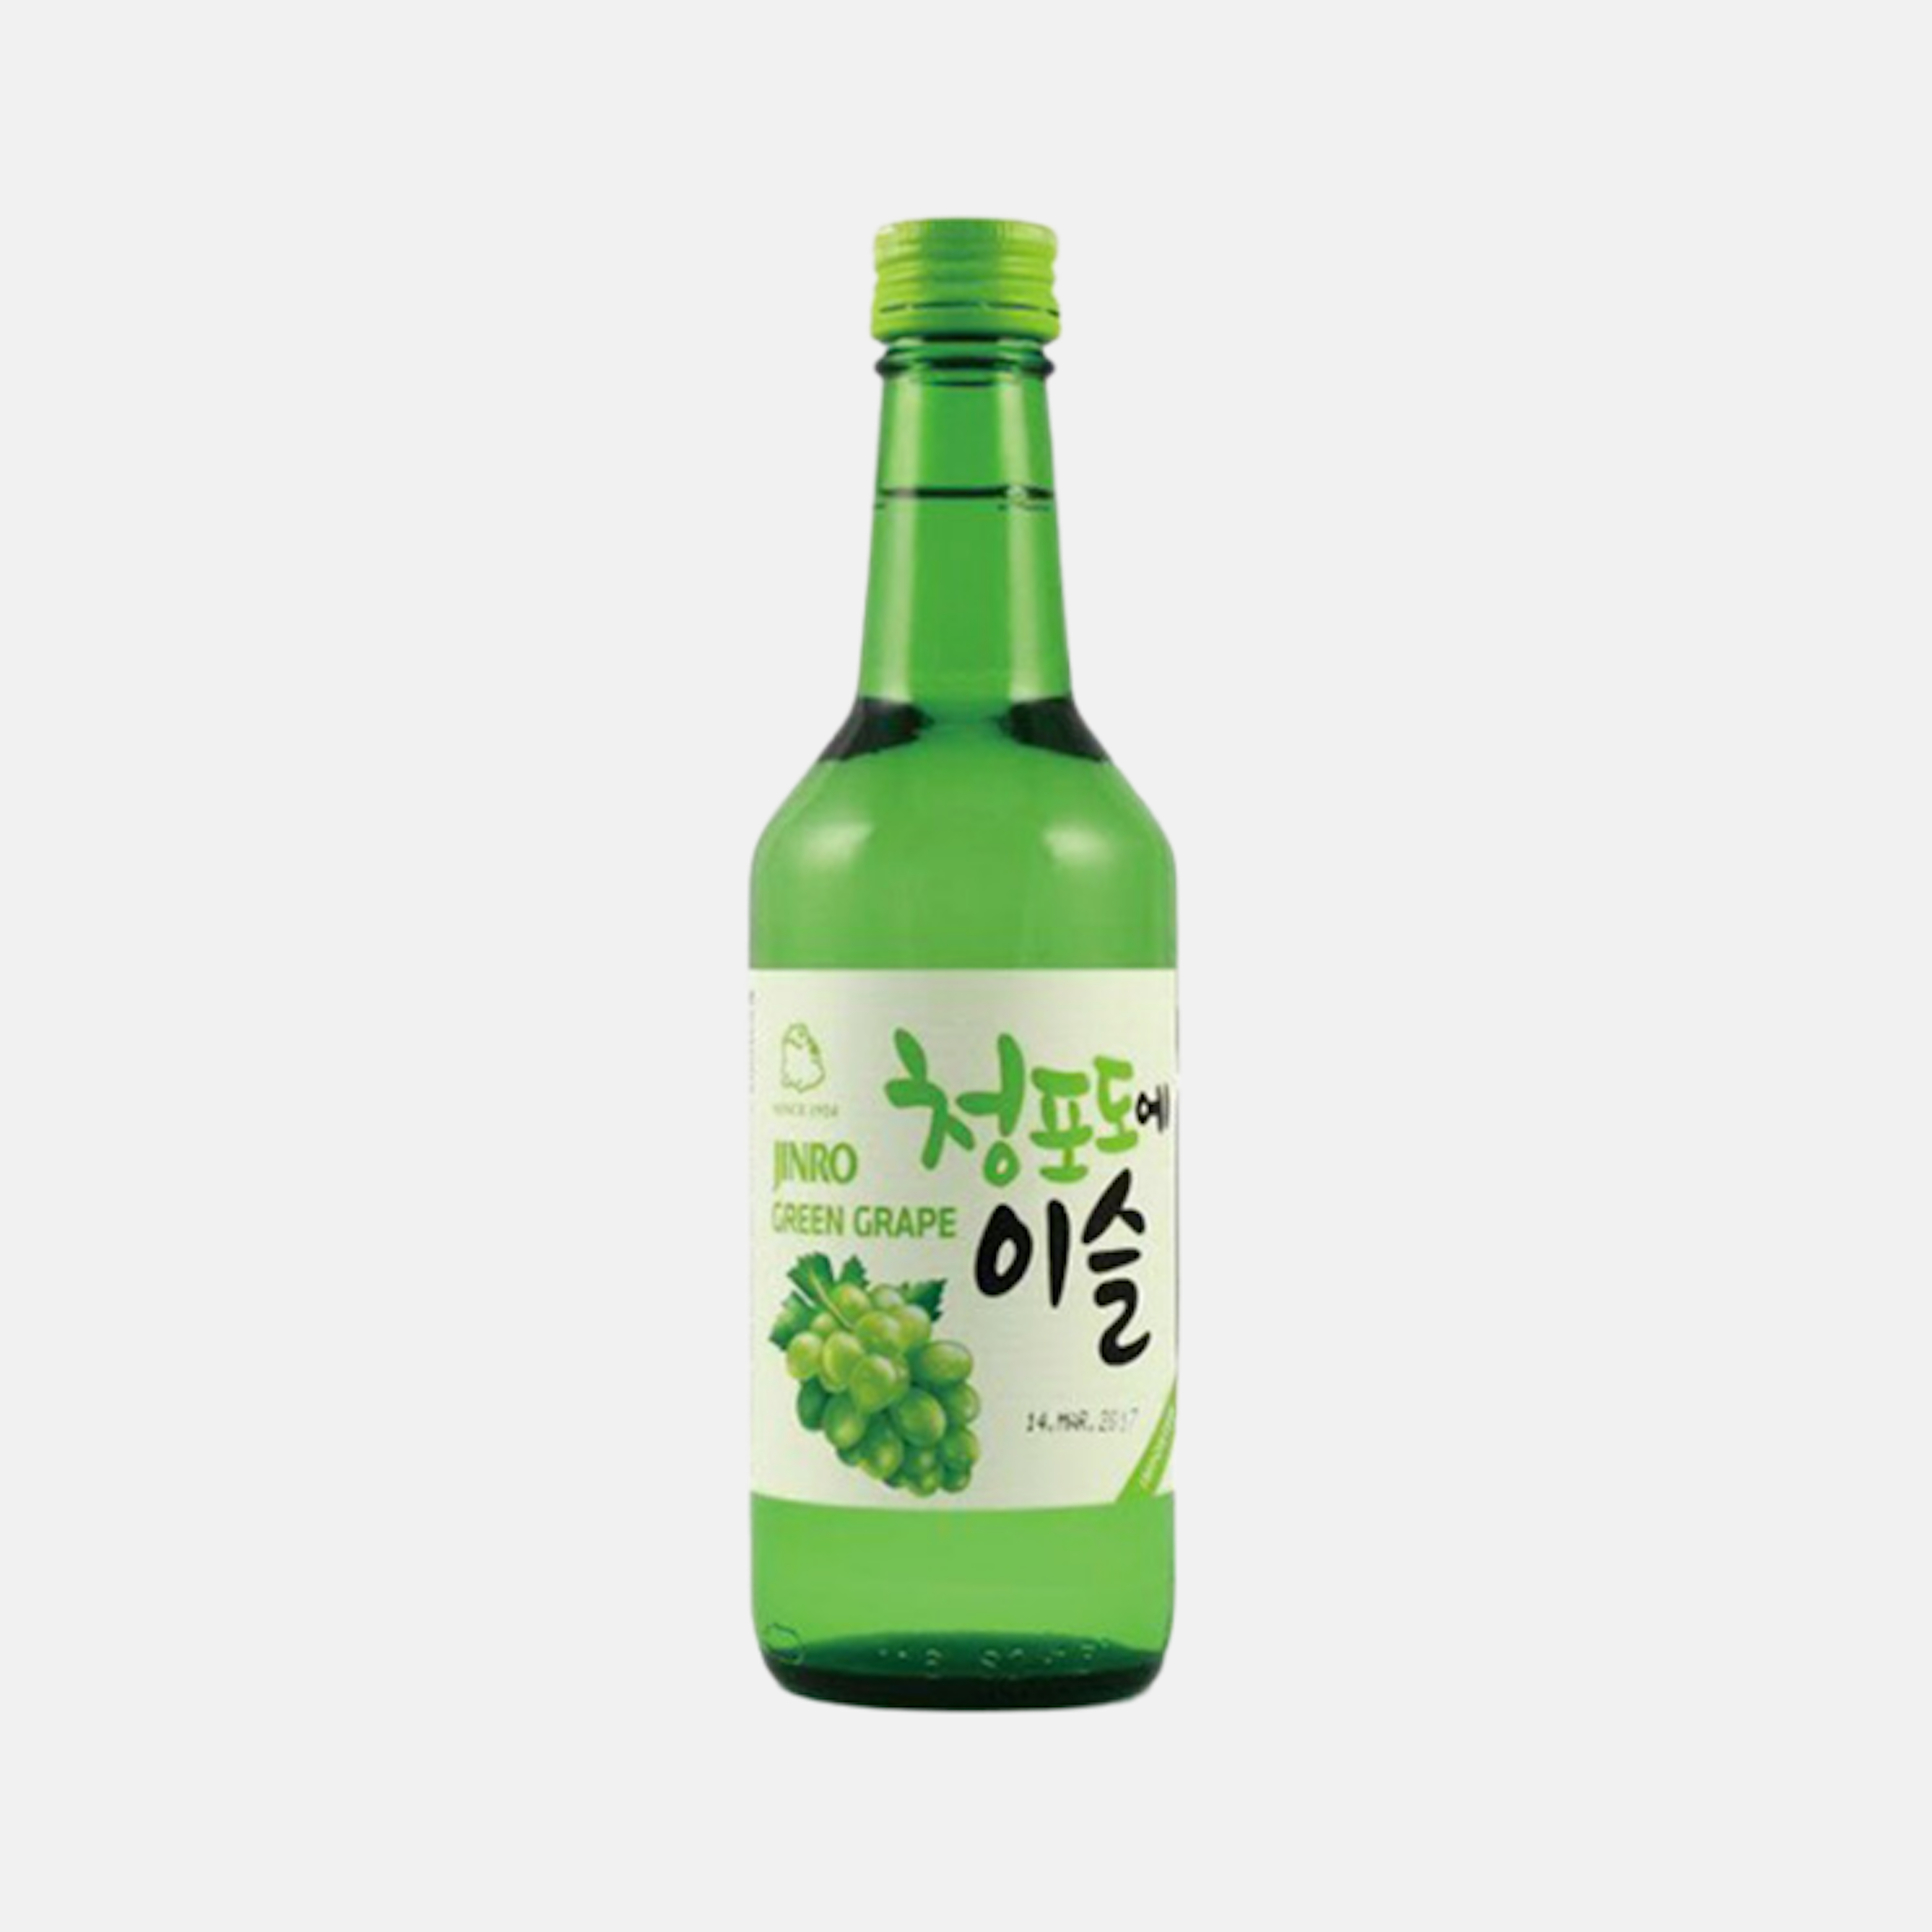 Erfrischender grüner Trauben-Soju aus Korea